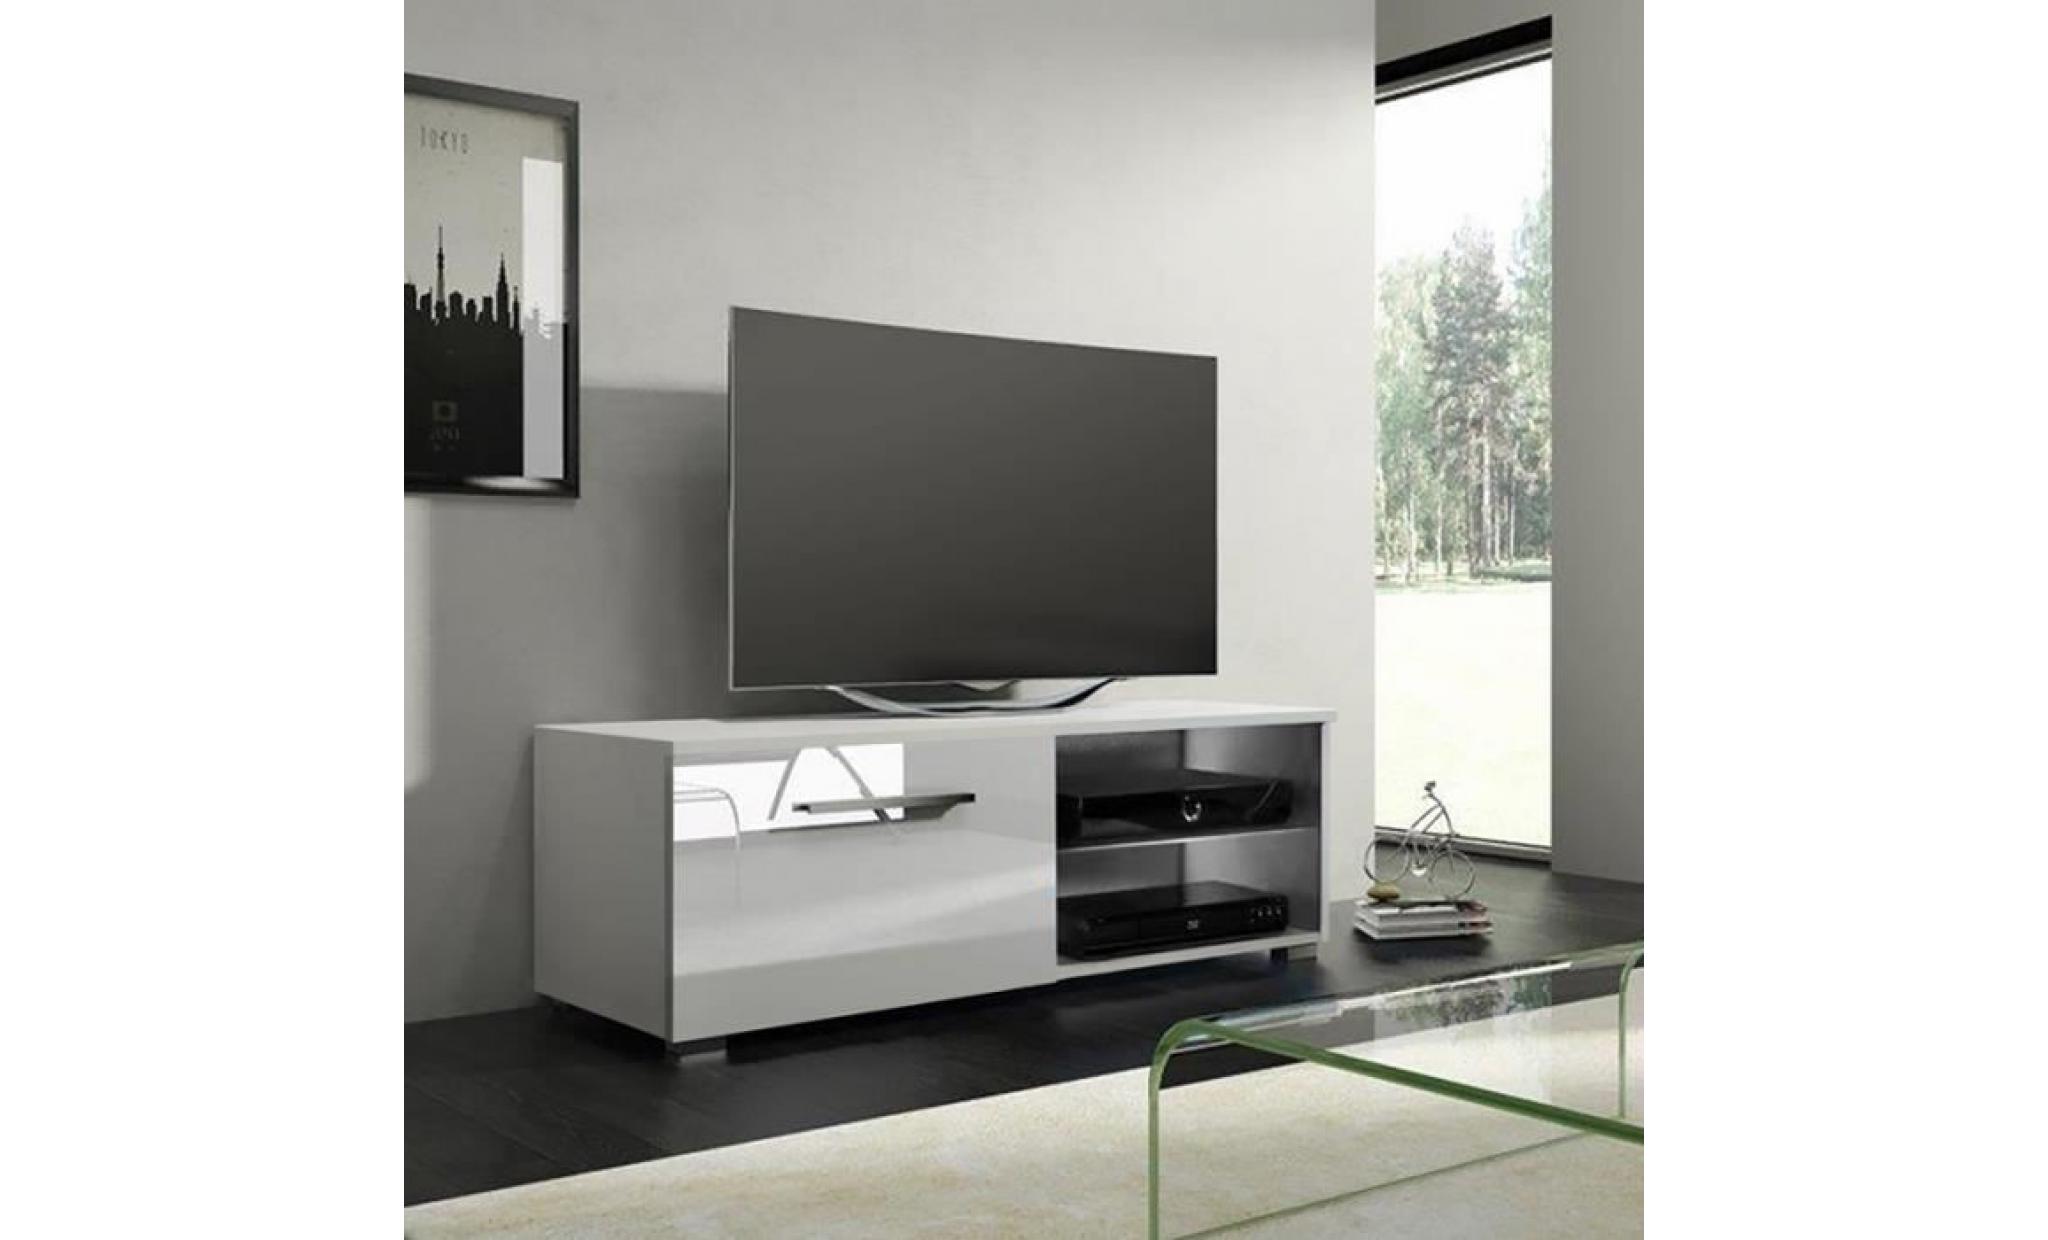 meuble tv / meuble salon   tenus single   100 cm   blanc mat / blanc brillant   avec led   2 compartiments ouverts   style classique